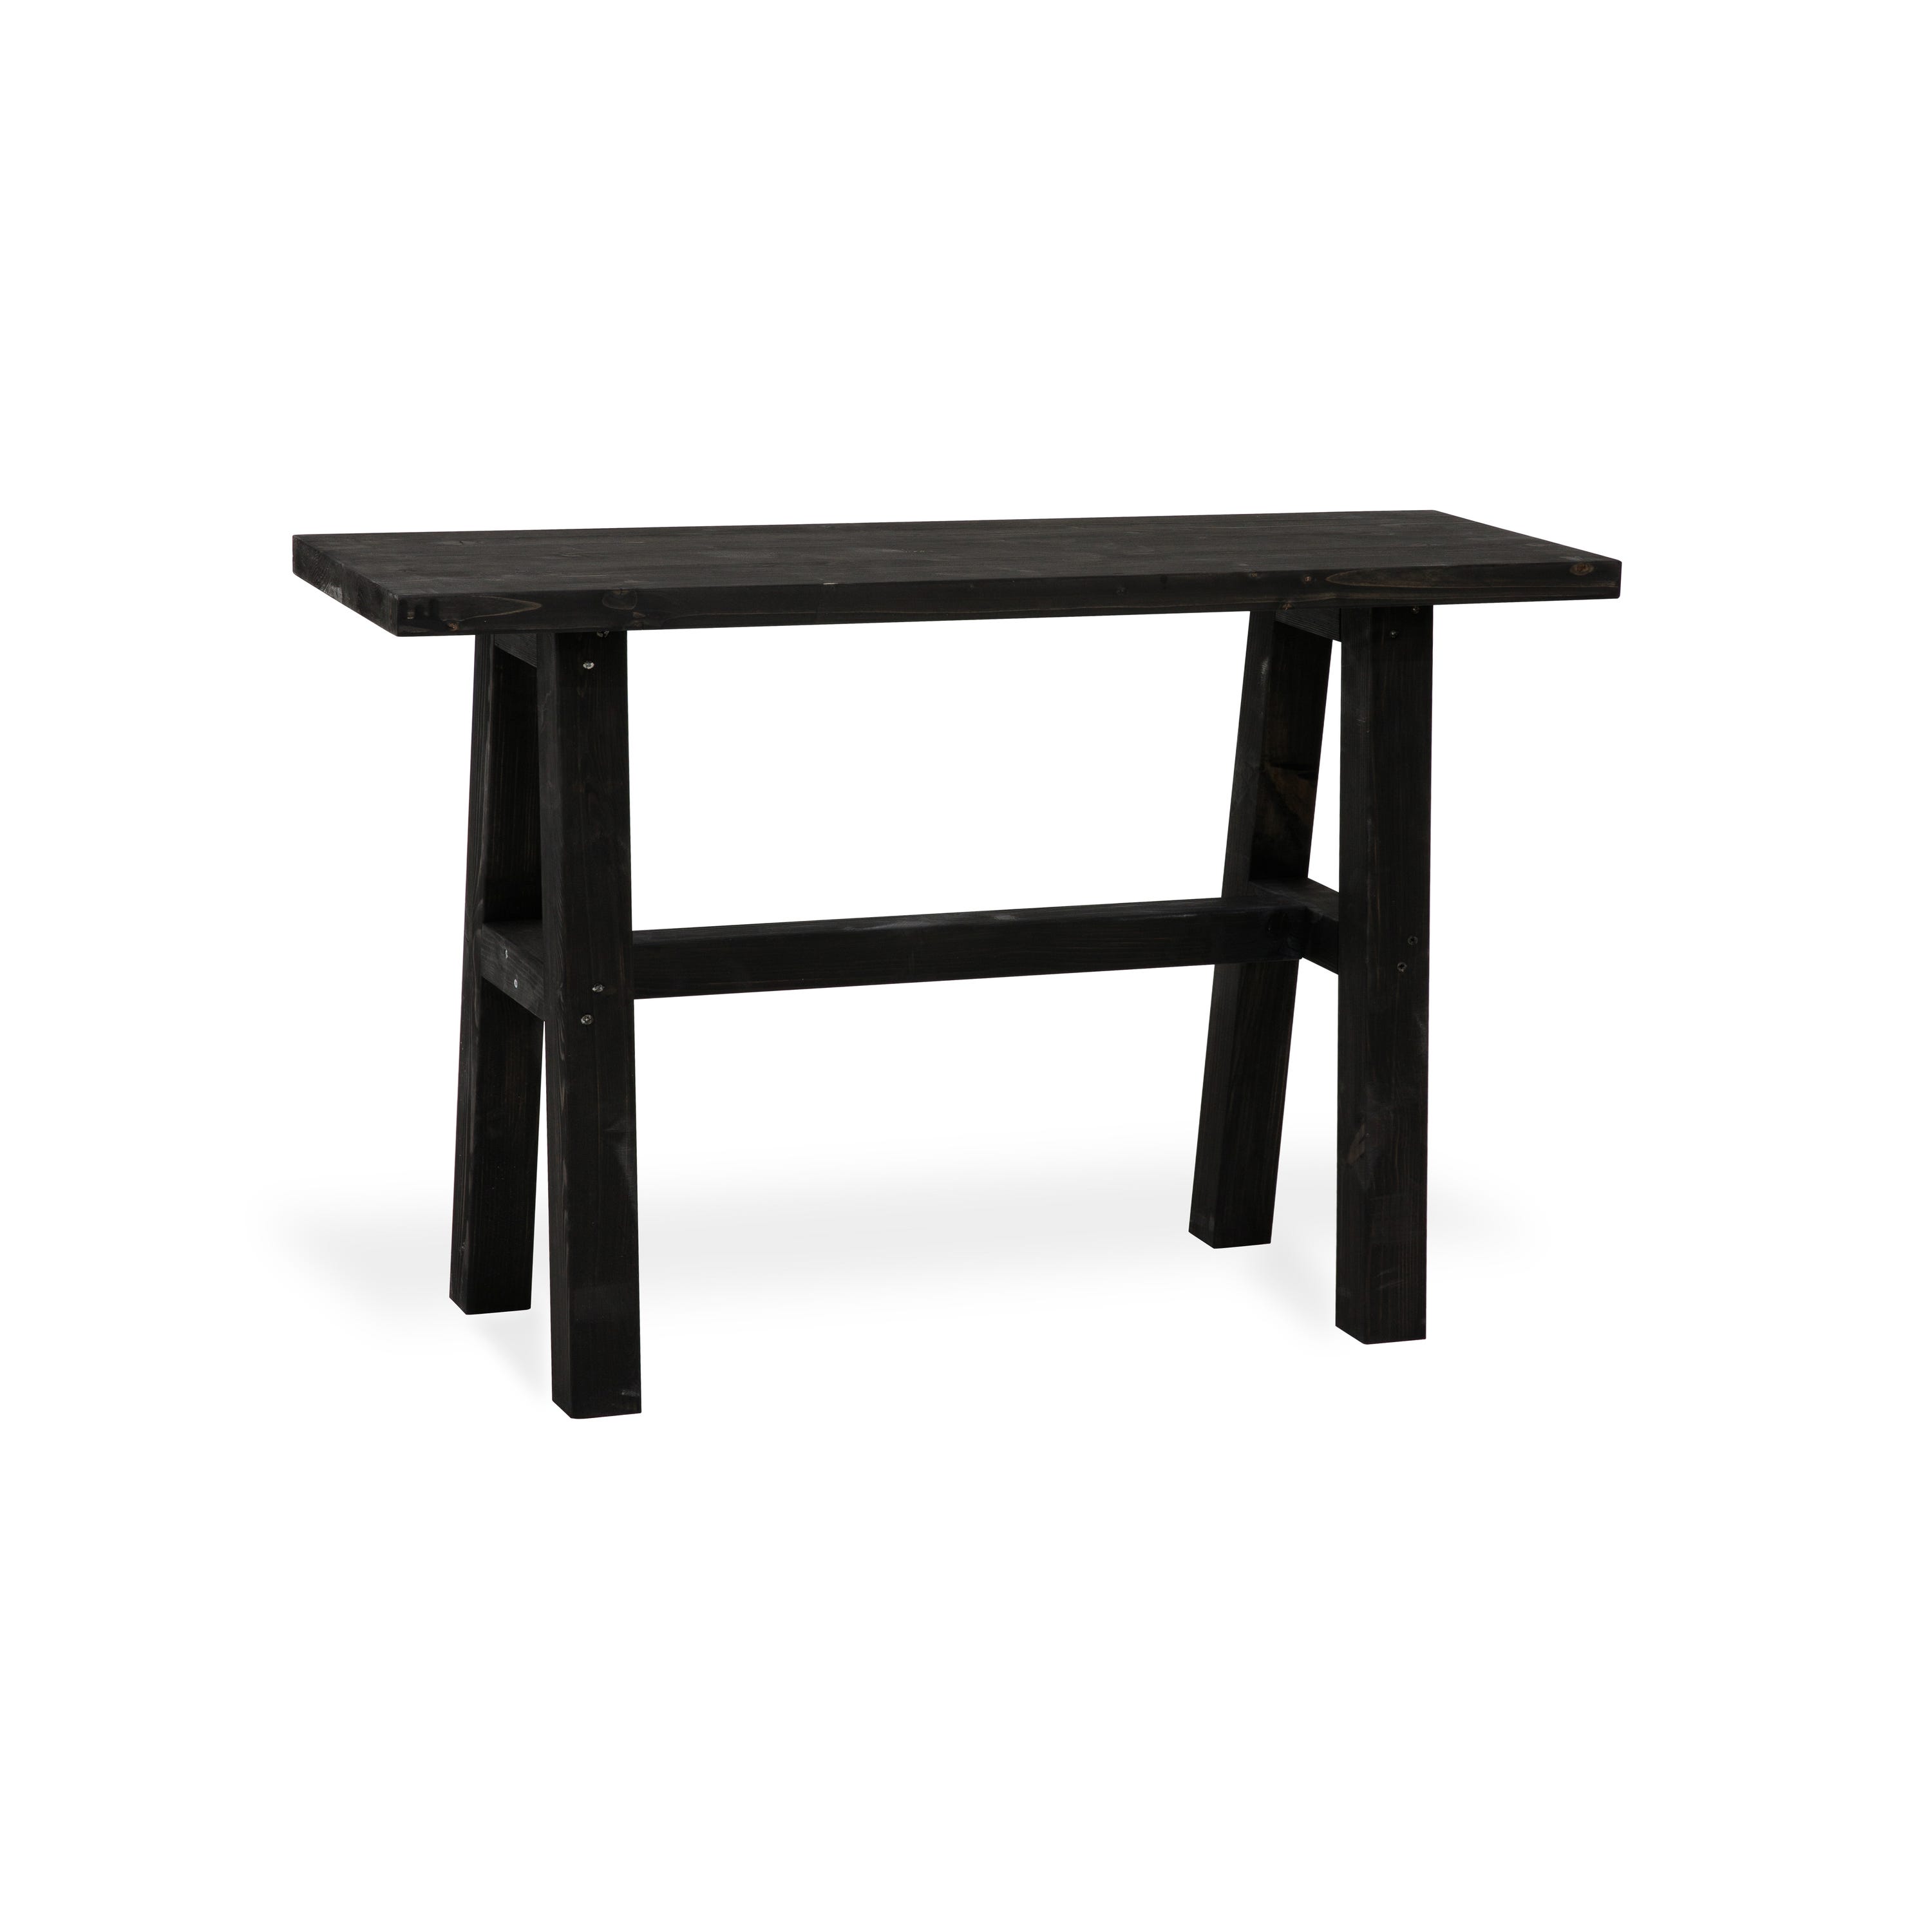 BLENOM Mesa consola recibidor o mesa de entrada de madera maciza sostenible  Aimana c/Irregular 50x23-25x76cm Nogal WN